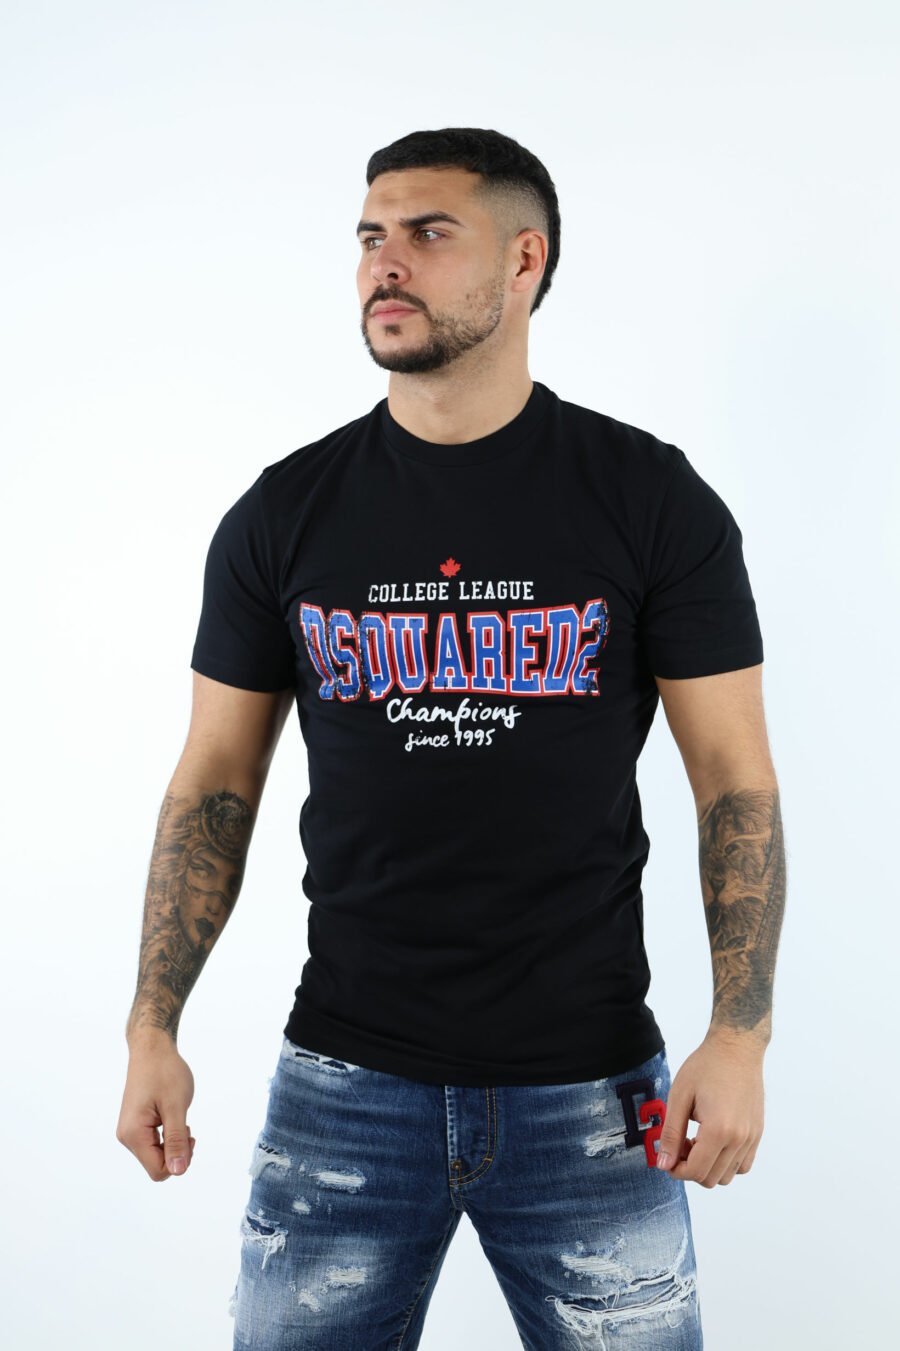 T-shirt preta com maxilogo "collegue league" - 106872